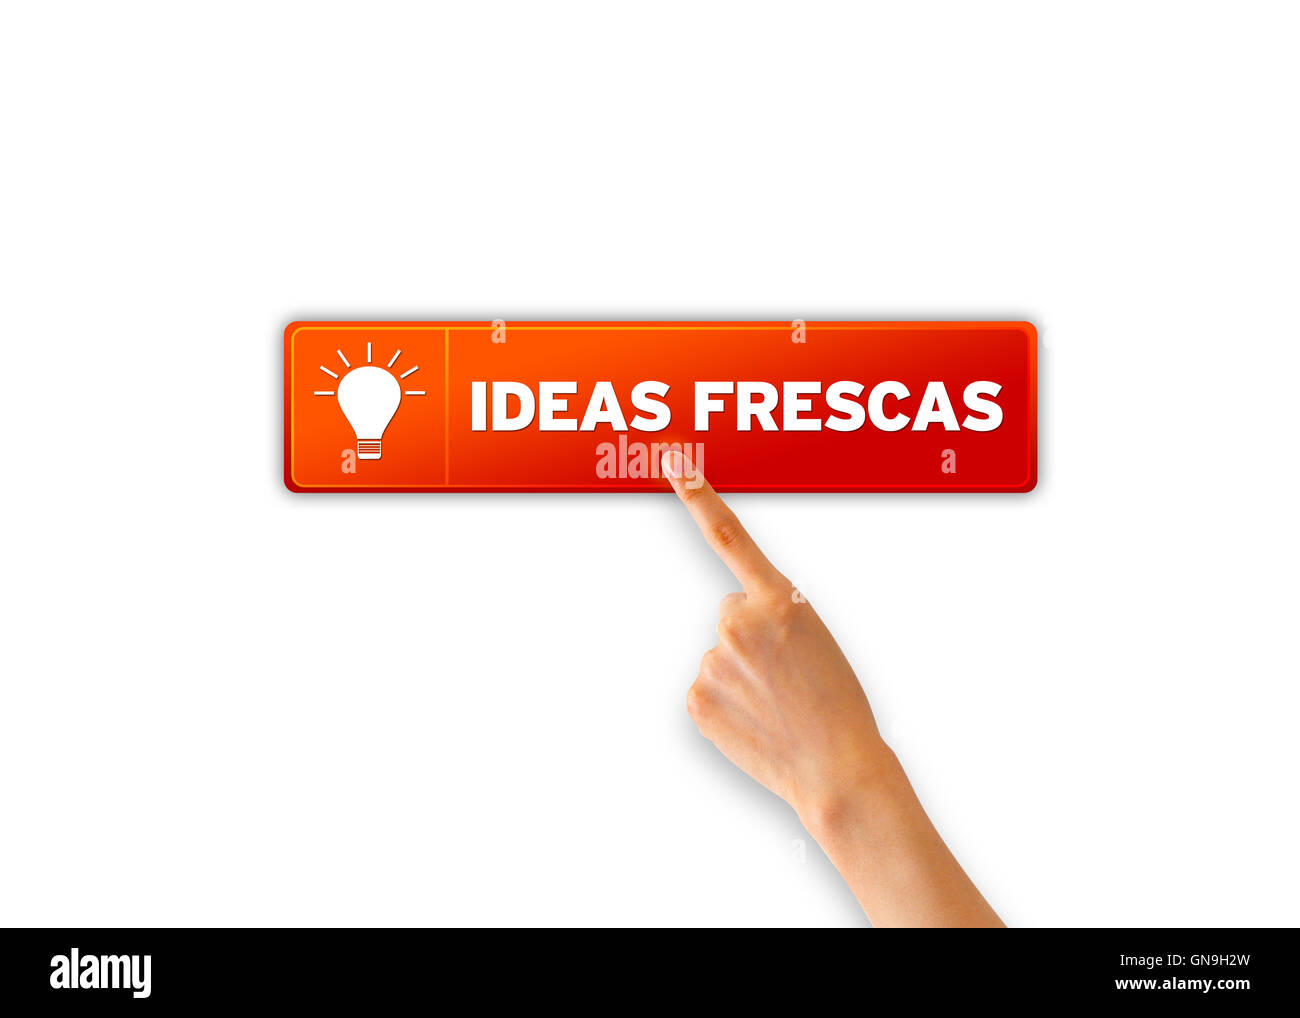 Ideas frescas Stock Photo